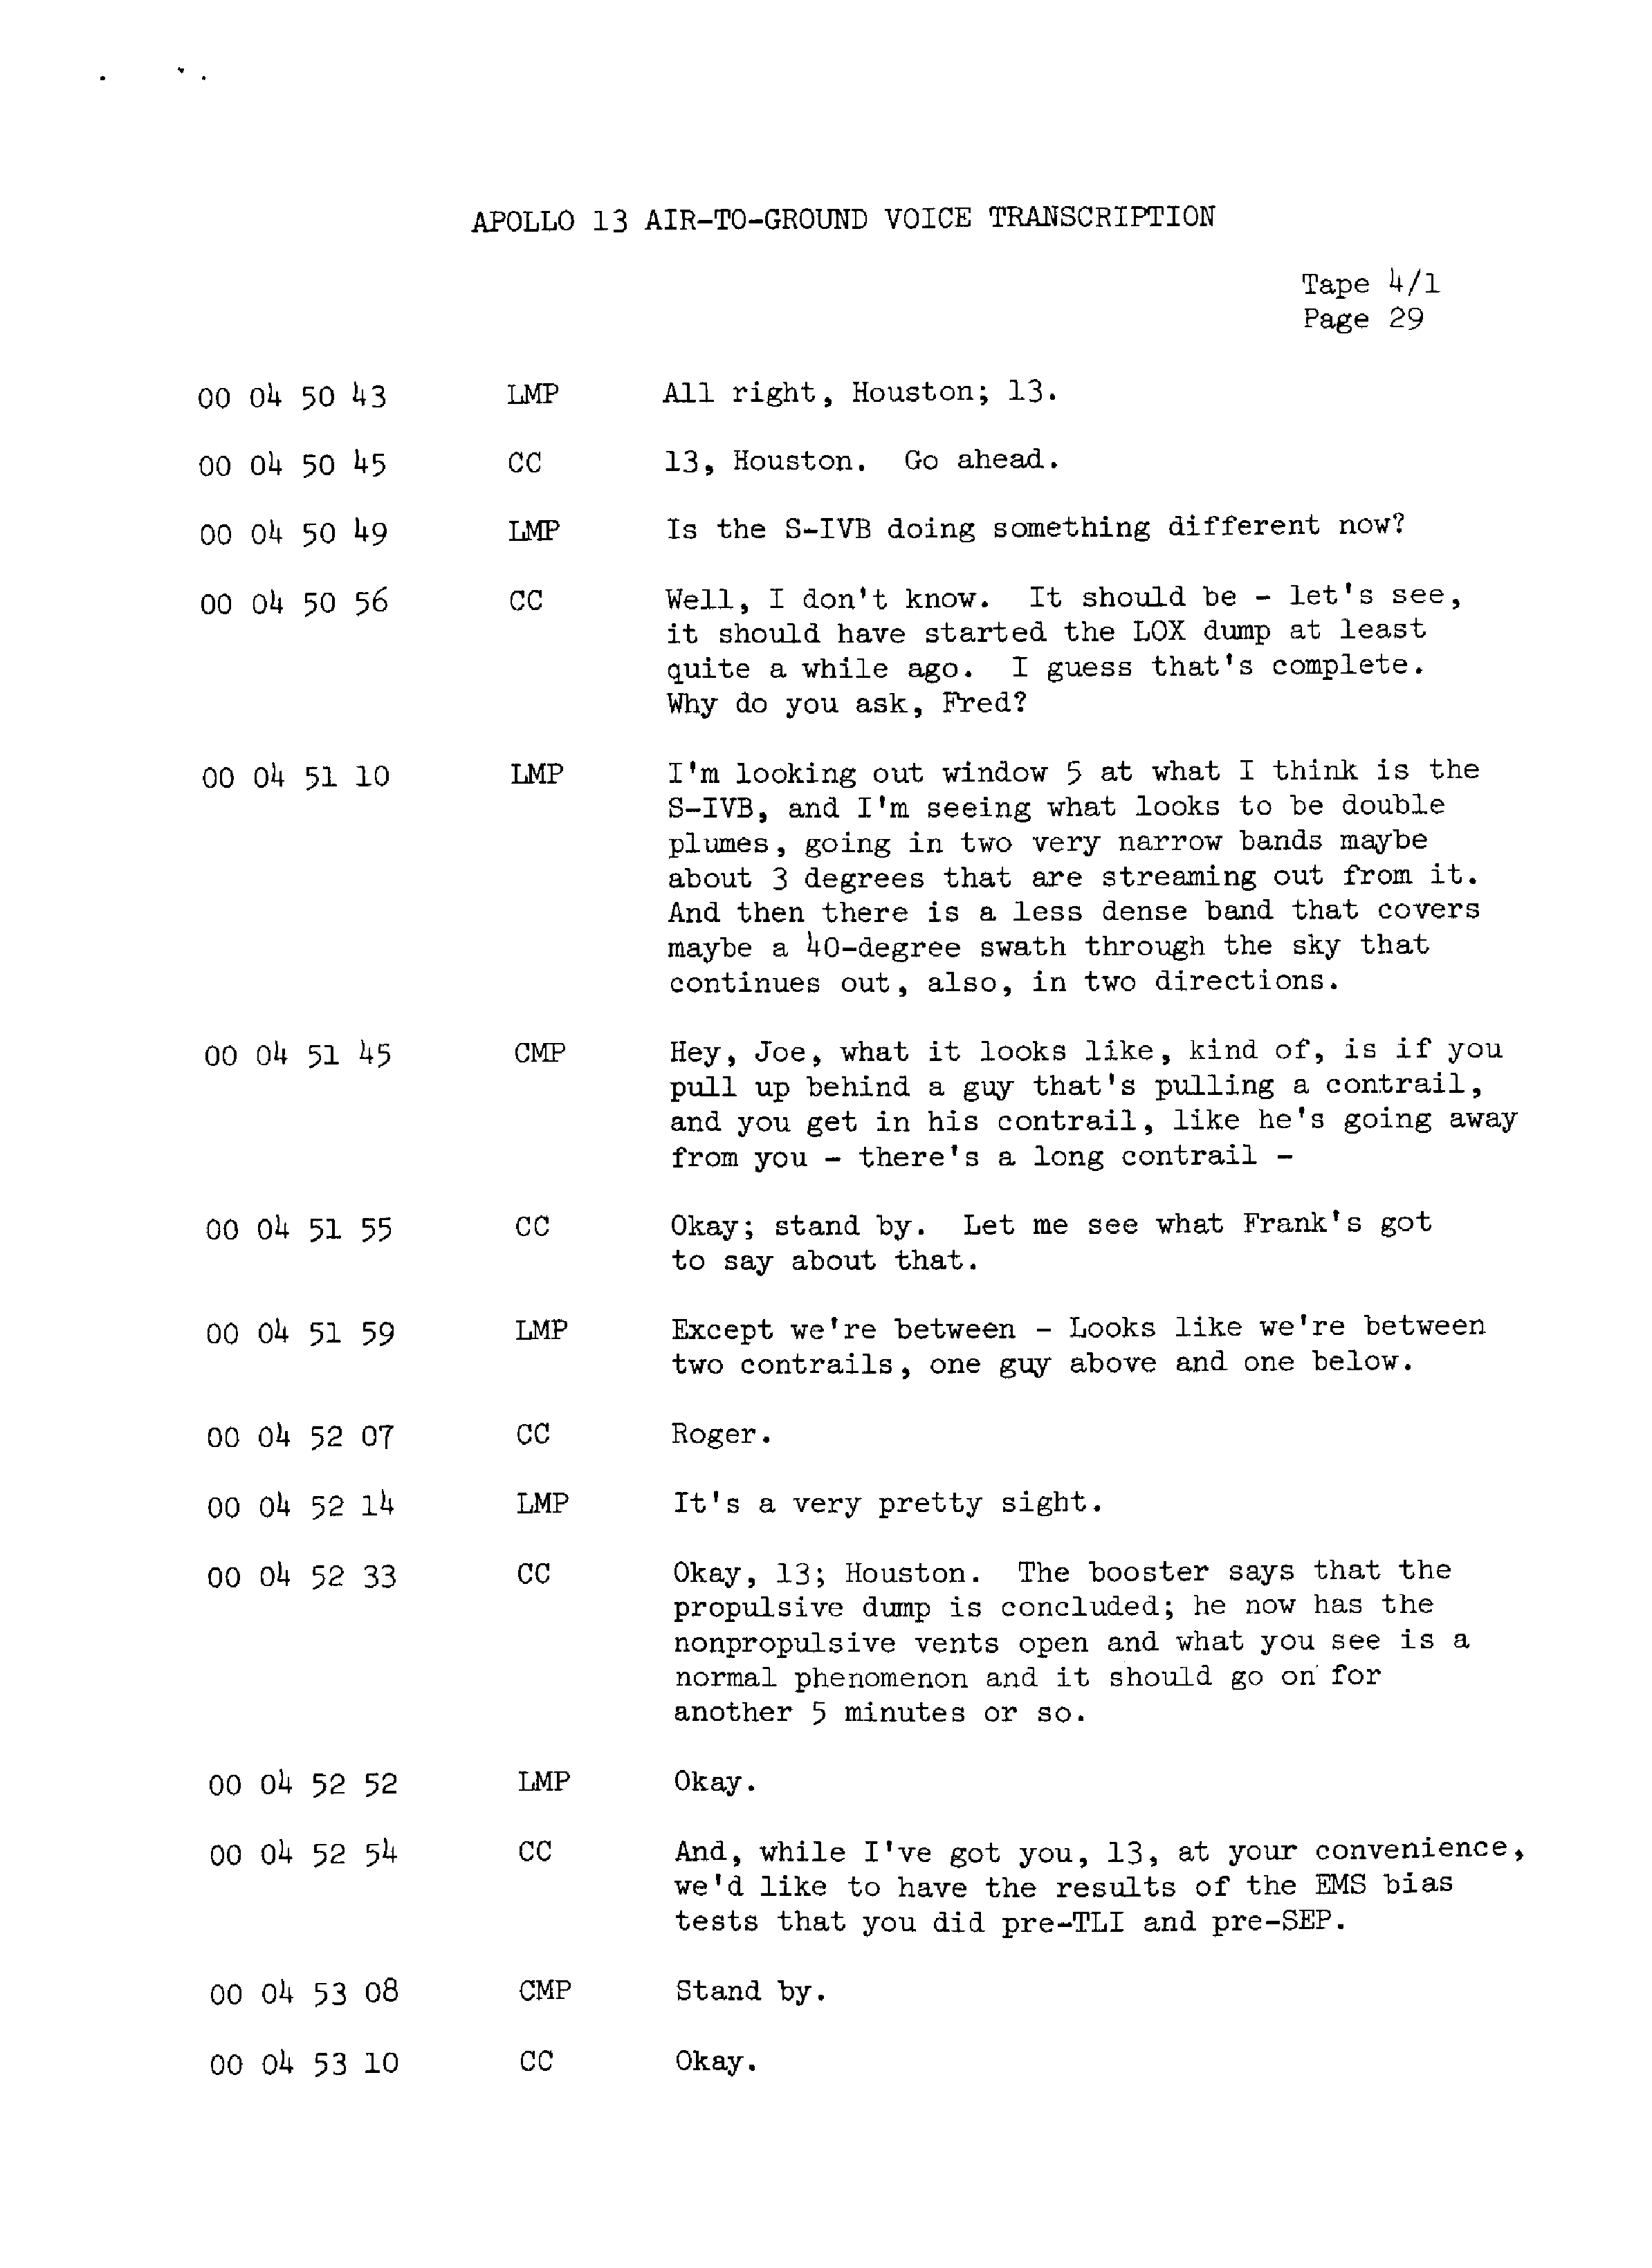 Page 36 of Apollo 13’s original transcript